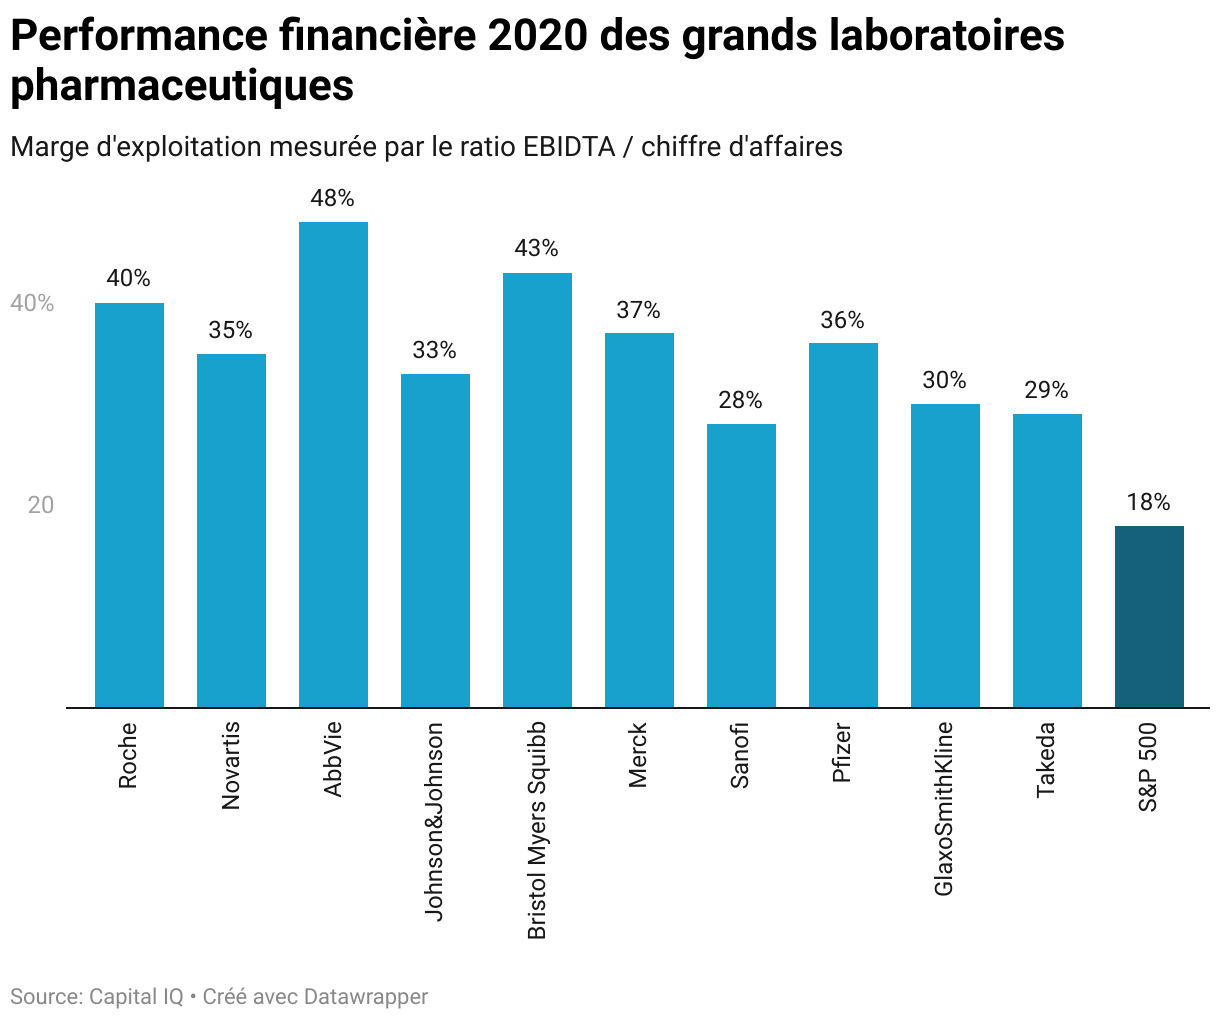 Performance financière 2020 des grands laboratoires pharmaceutiques